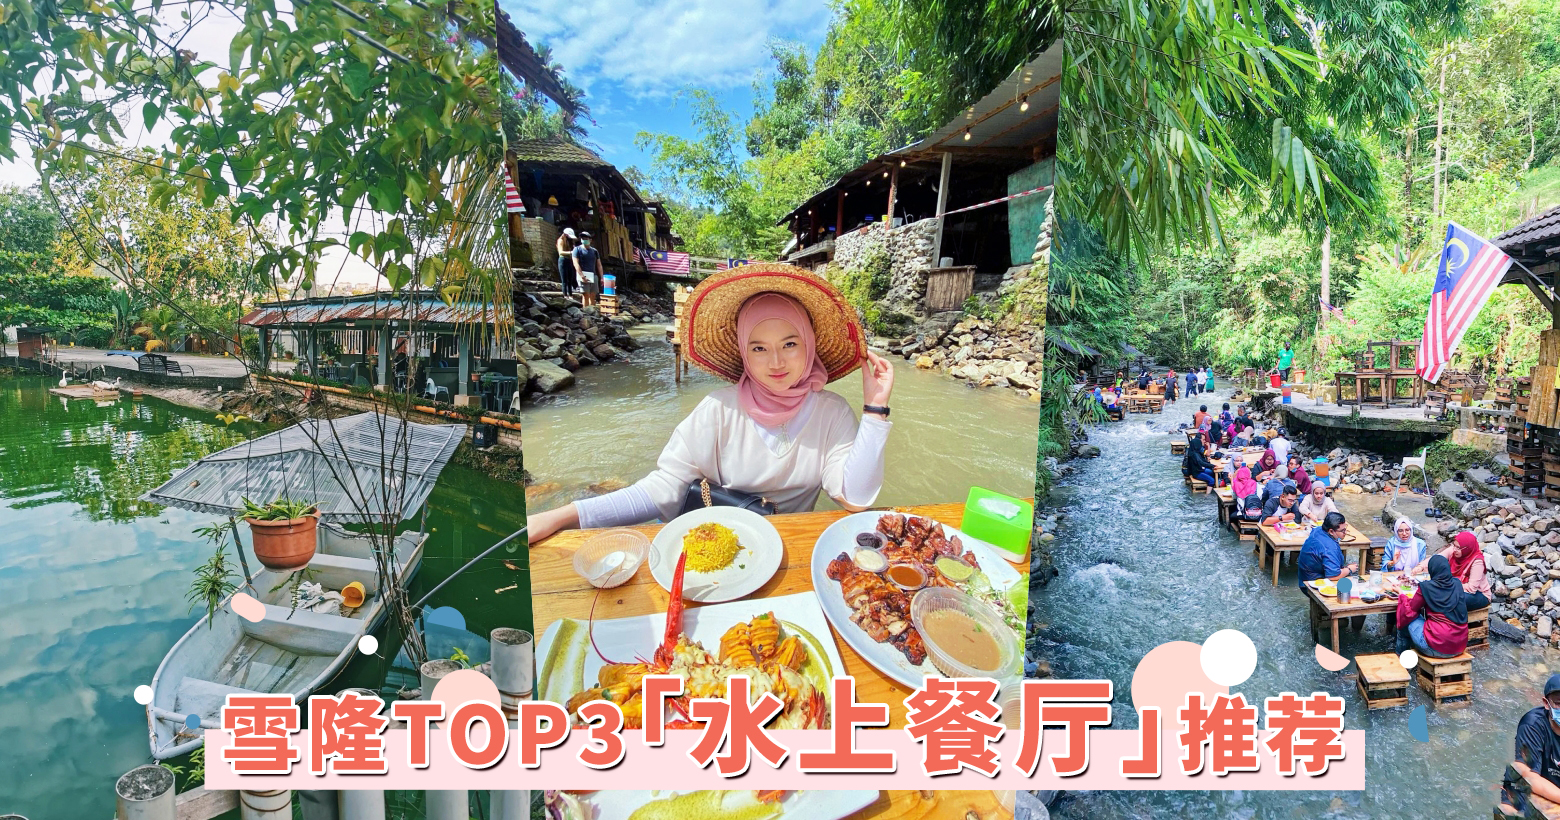 我敢打赌，广州再也找不到第二家这么美的水上园林餐厅了